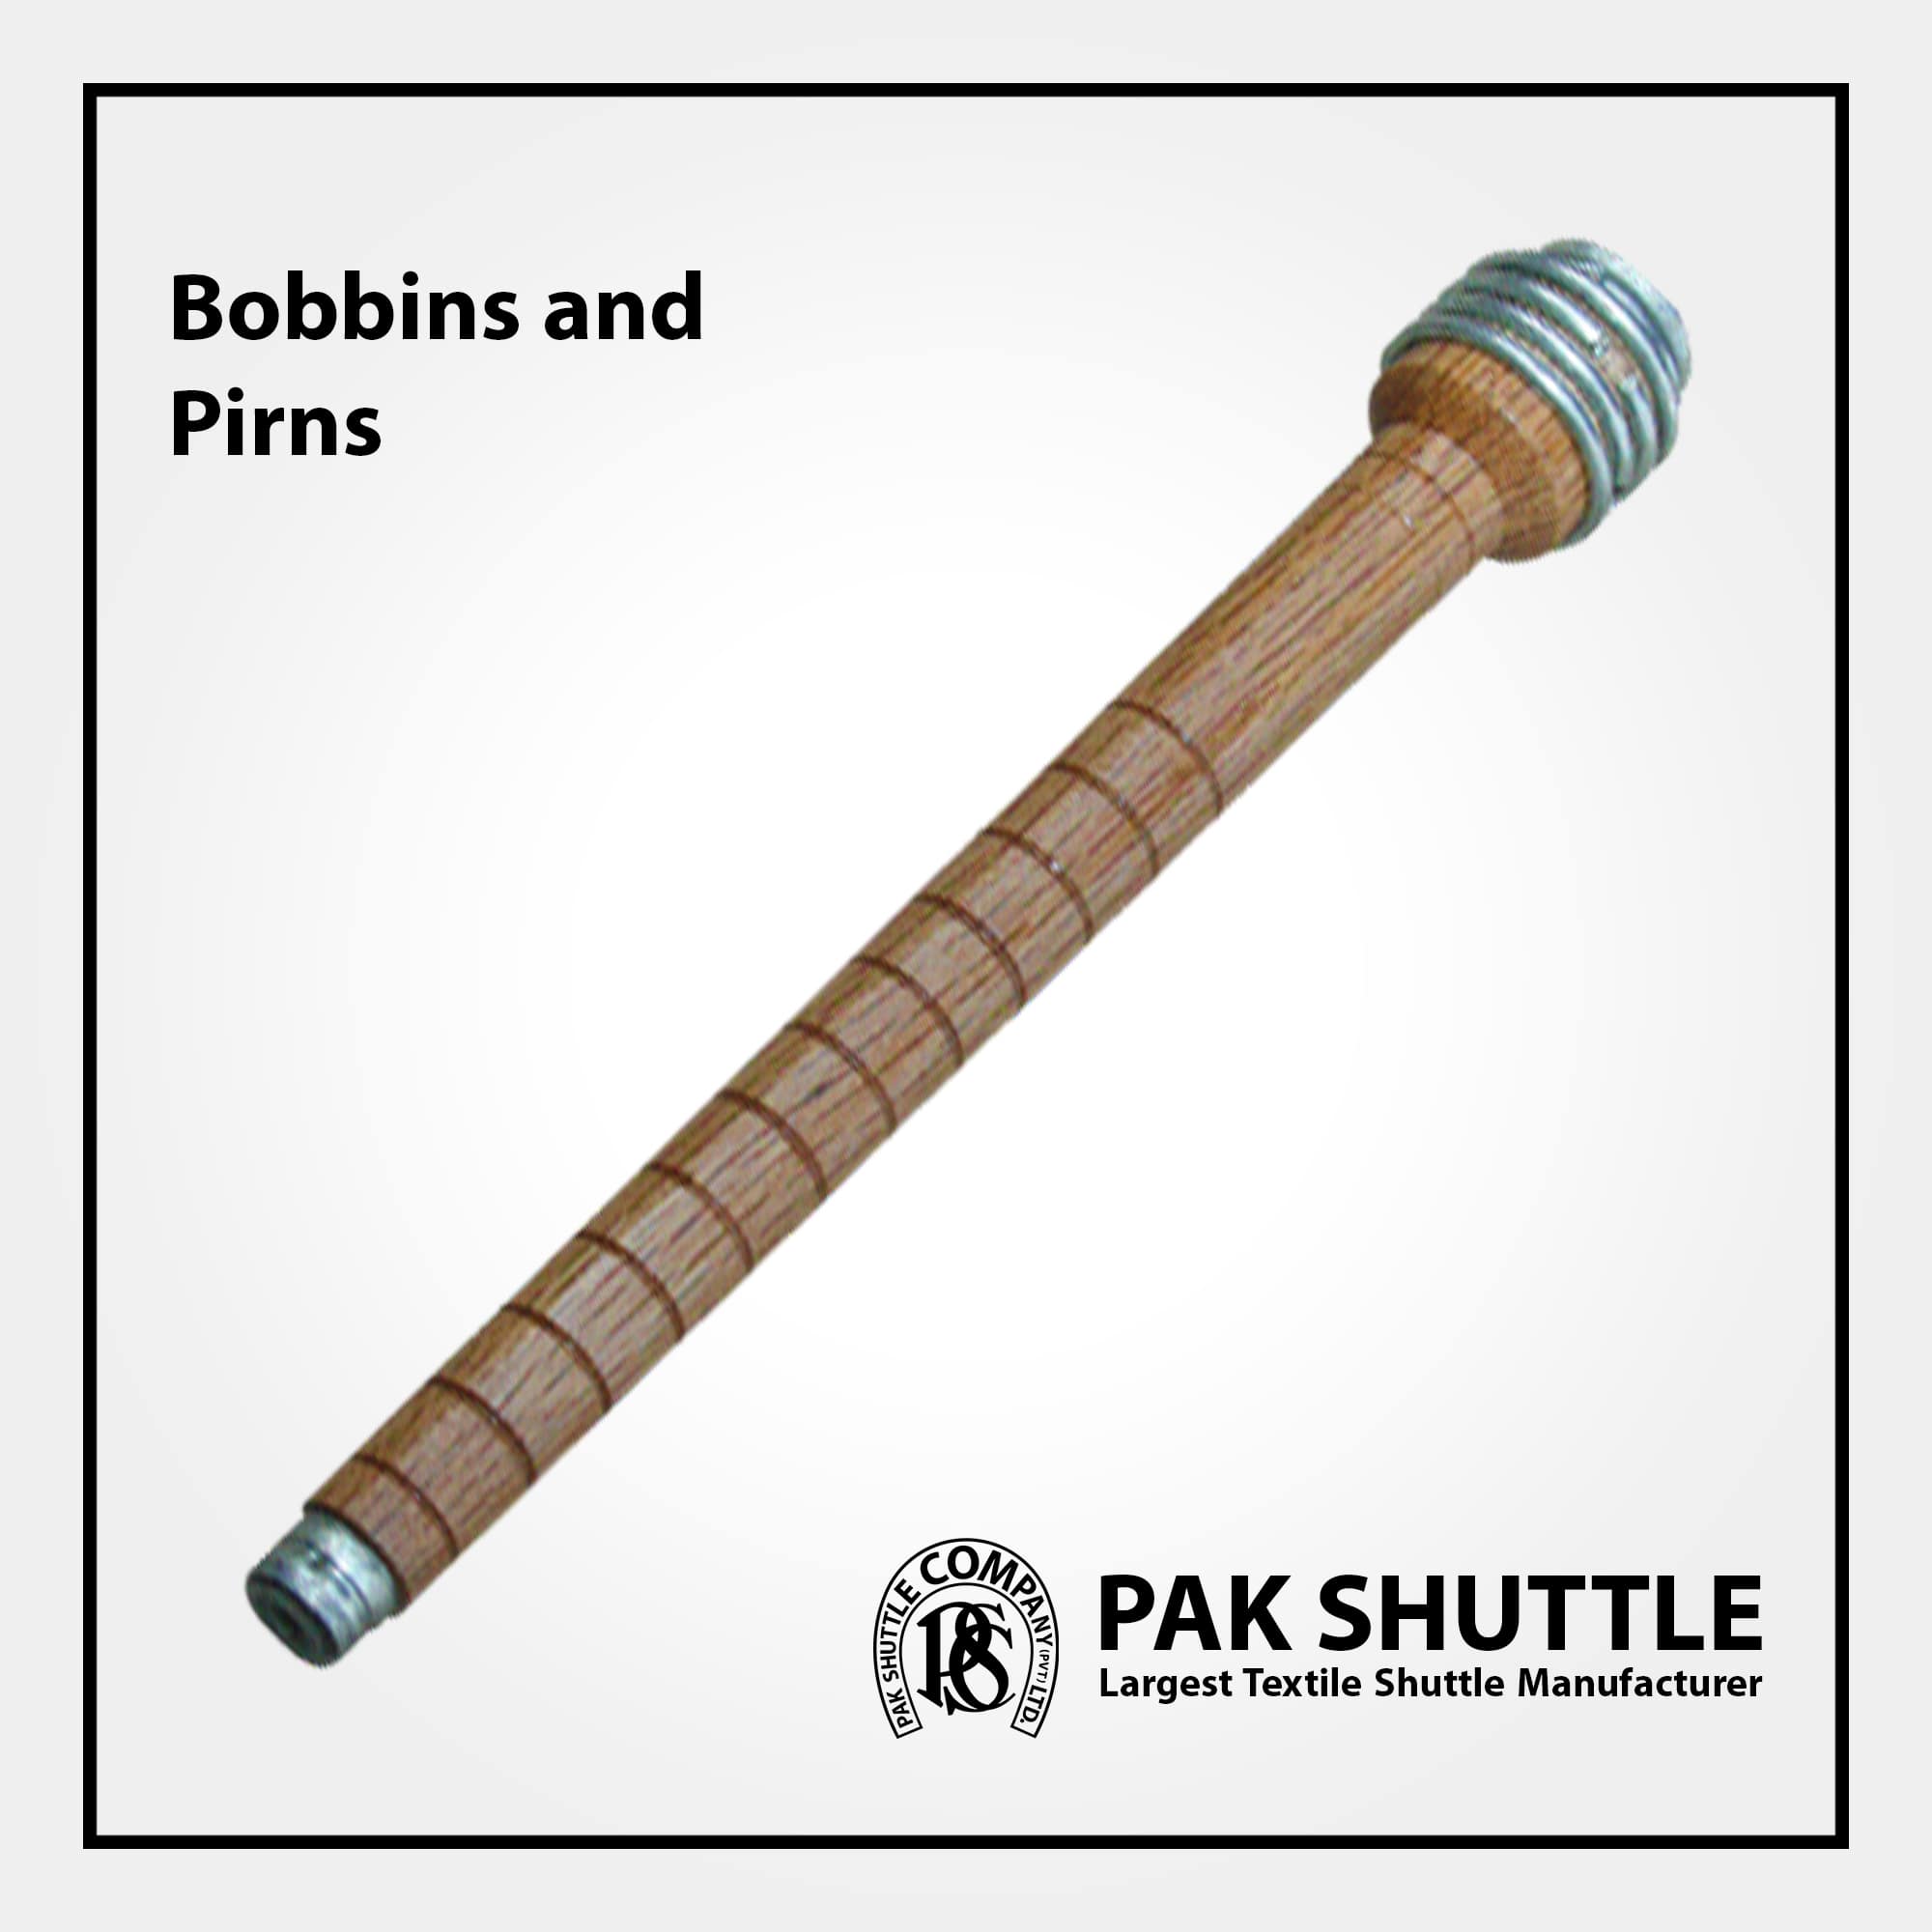 BOBBINS & PIRNS (For Various Shuttles) by Pak Shuttle Company Pvt Ltd.